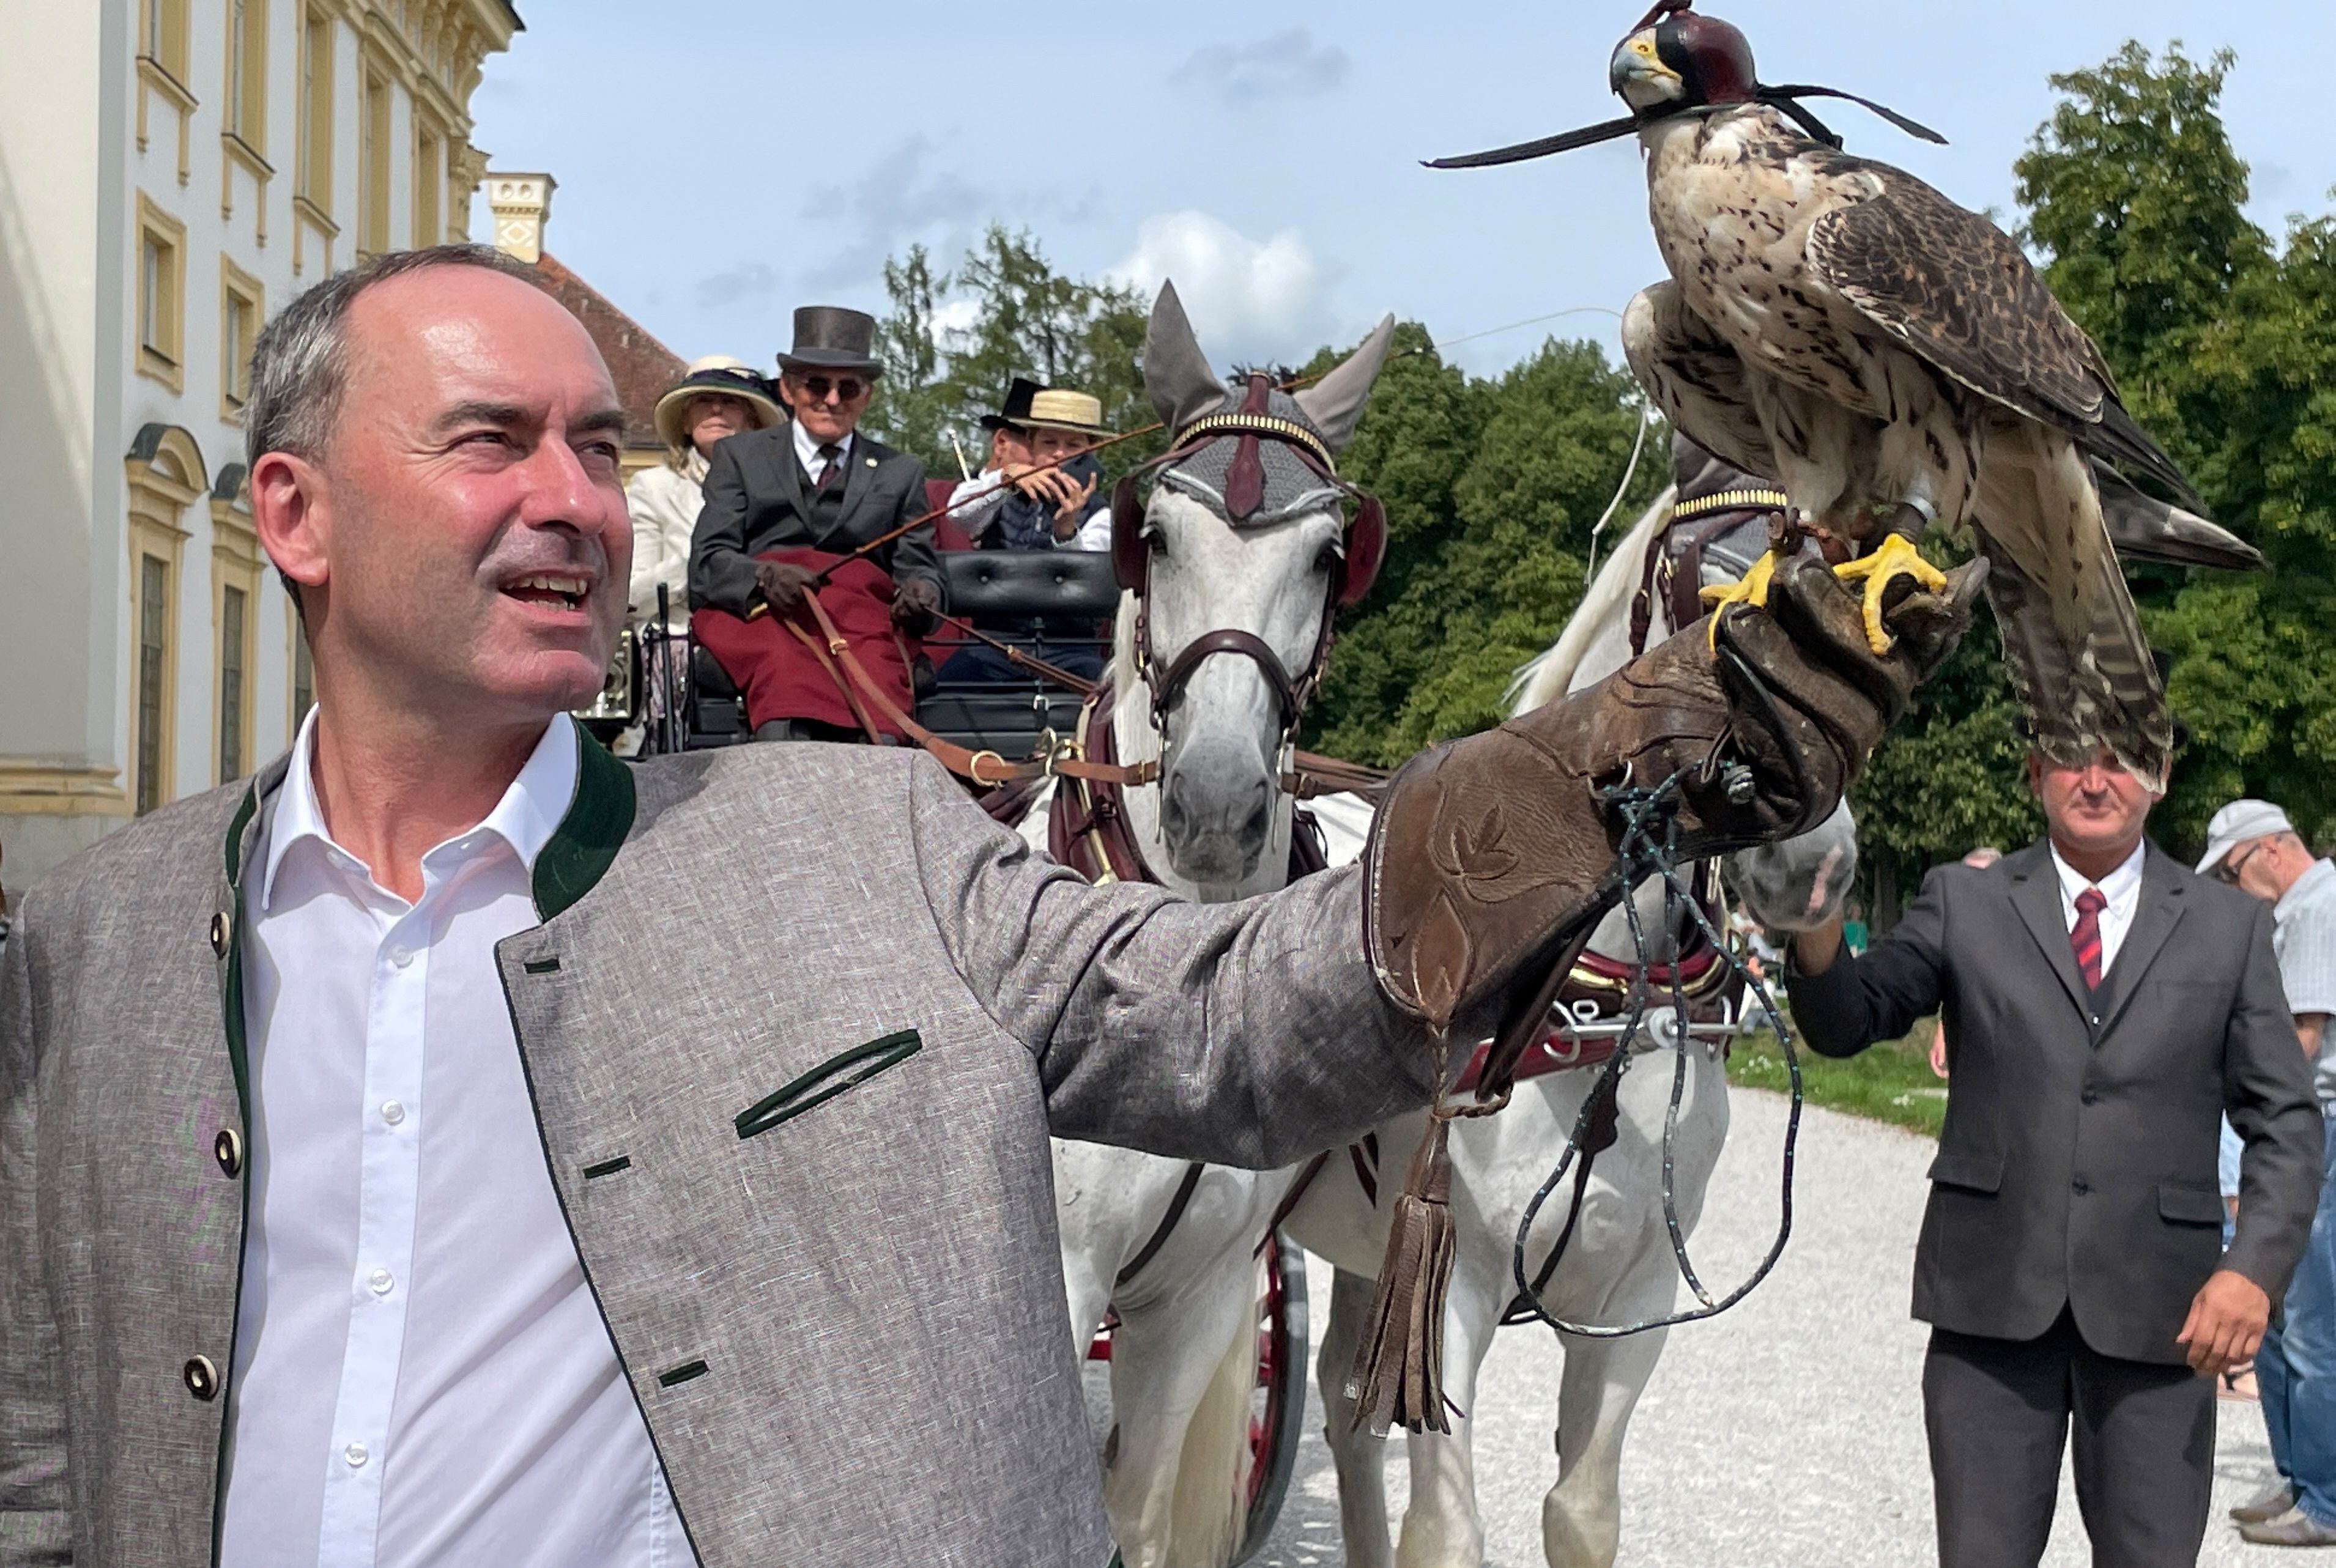 El vicepresidente de Baviera y líder de los Votantes Libres, Hubert Aiwanger, fotografiado con un halcón en un acto público este domingo.